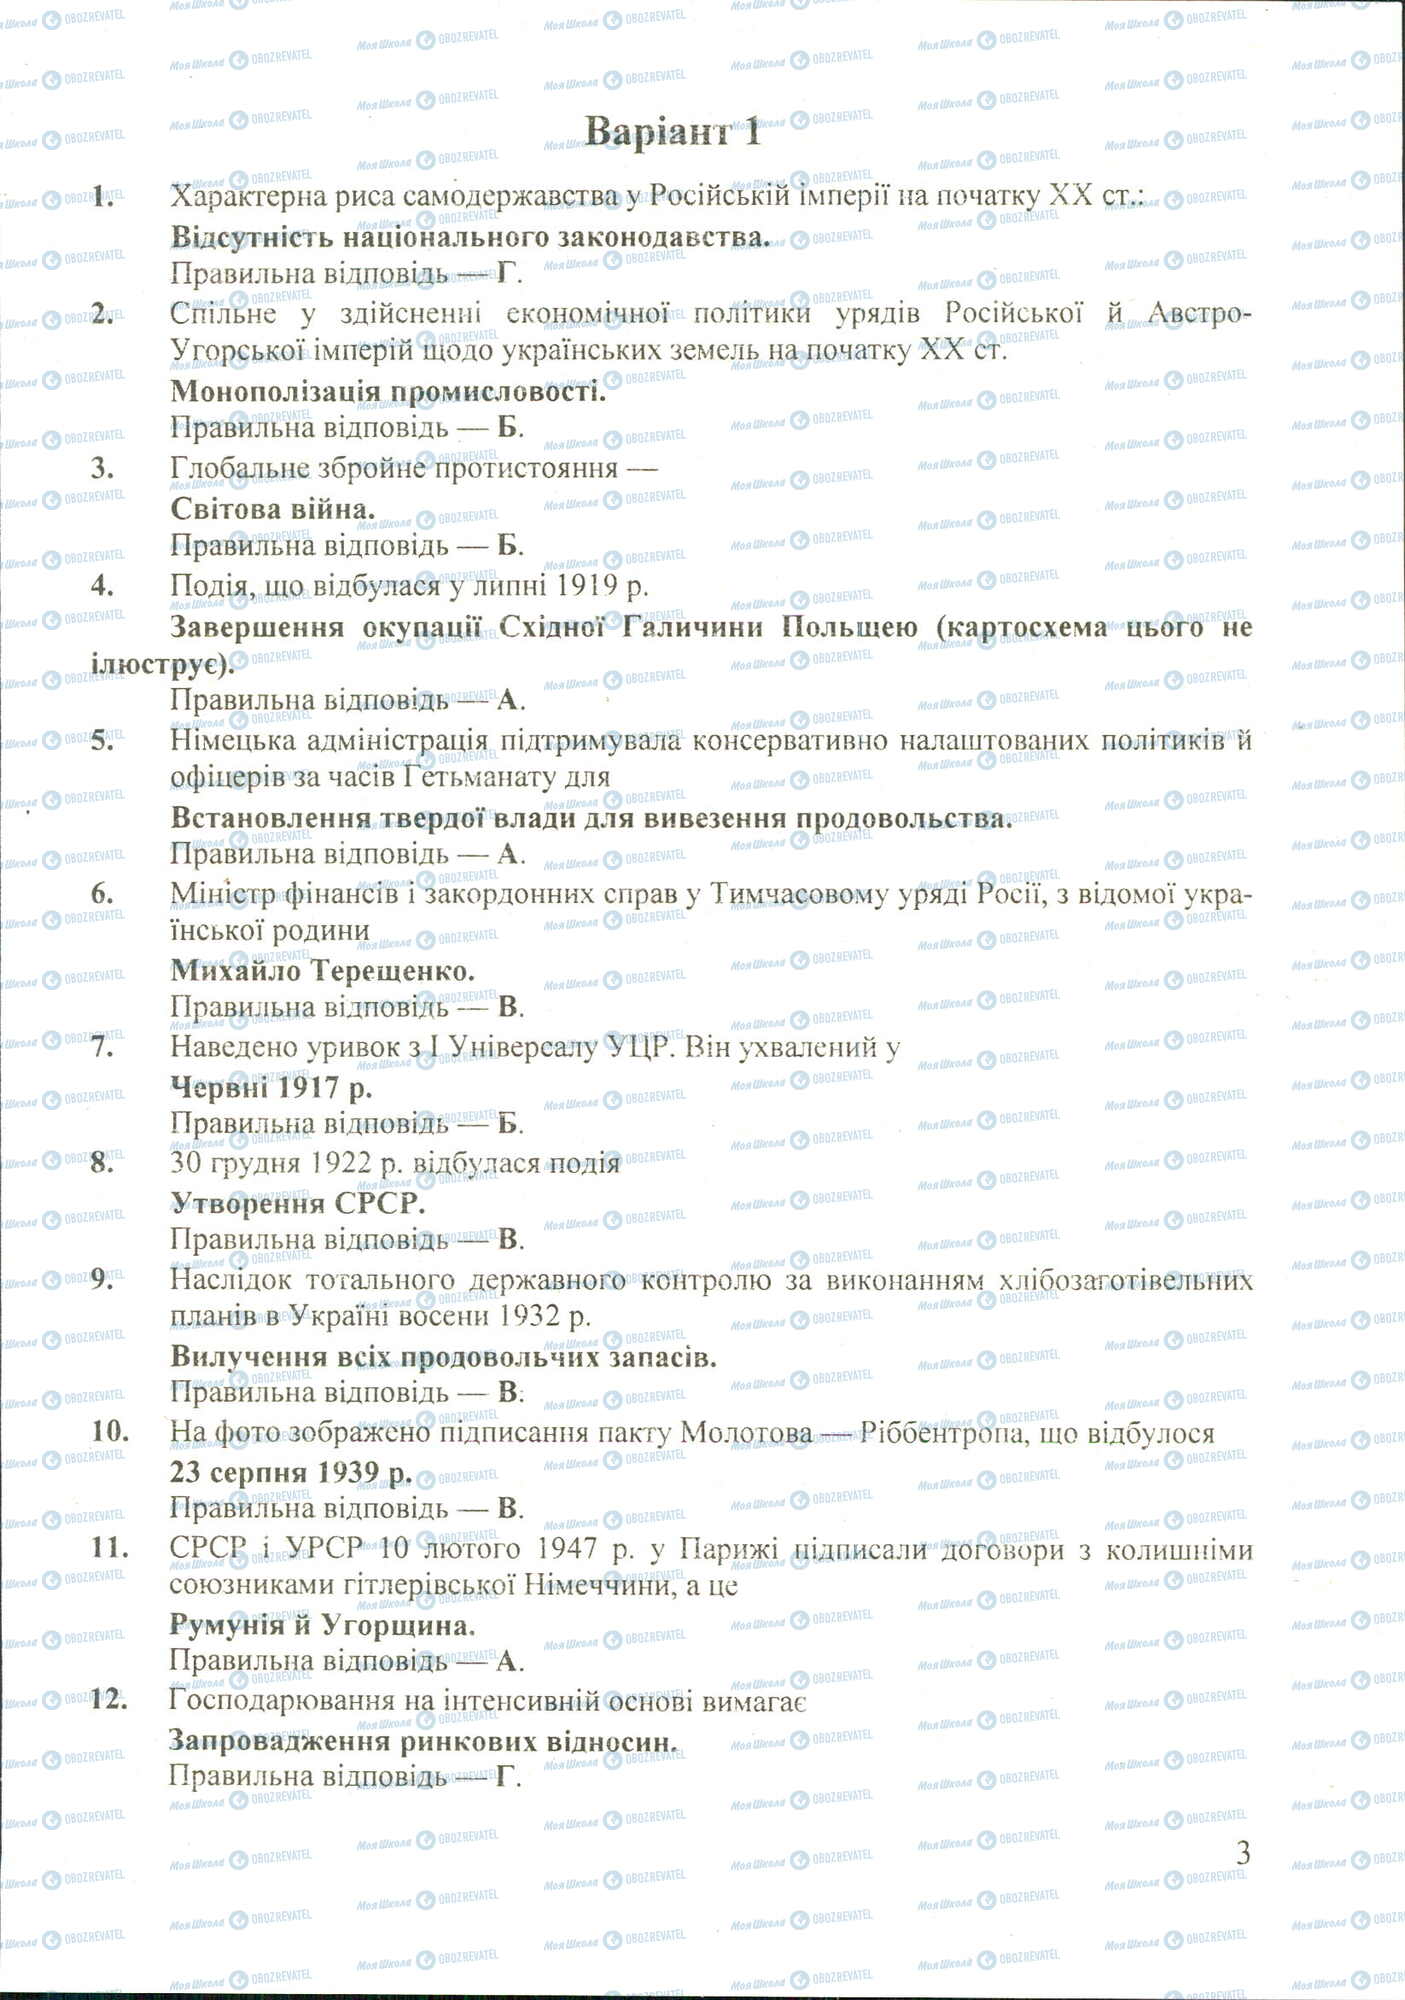 ДПА История Украины 11 класс страница image0000017A